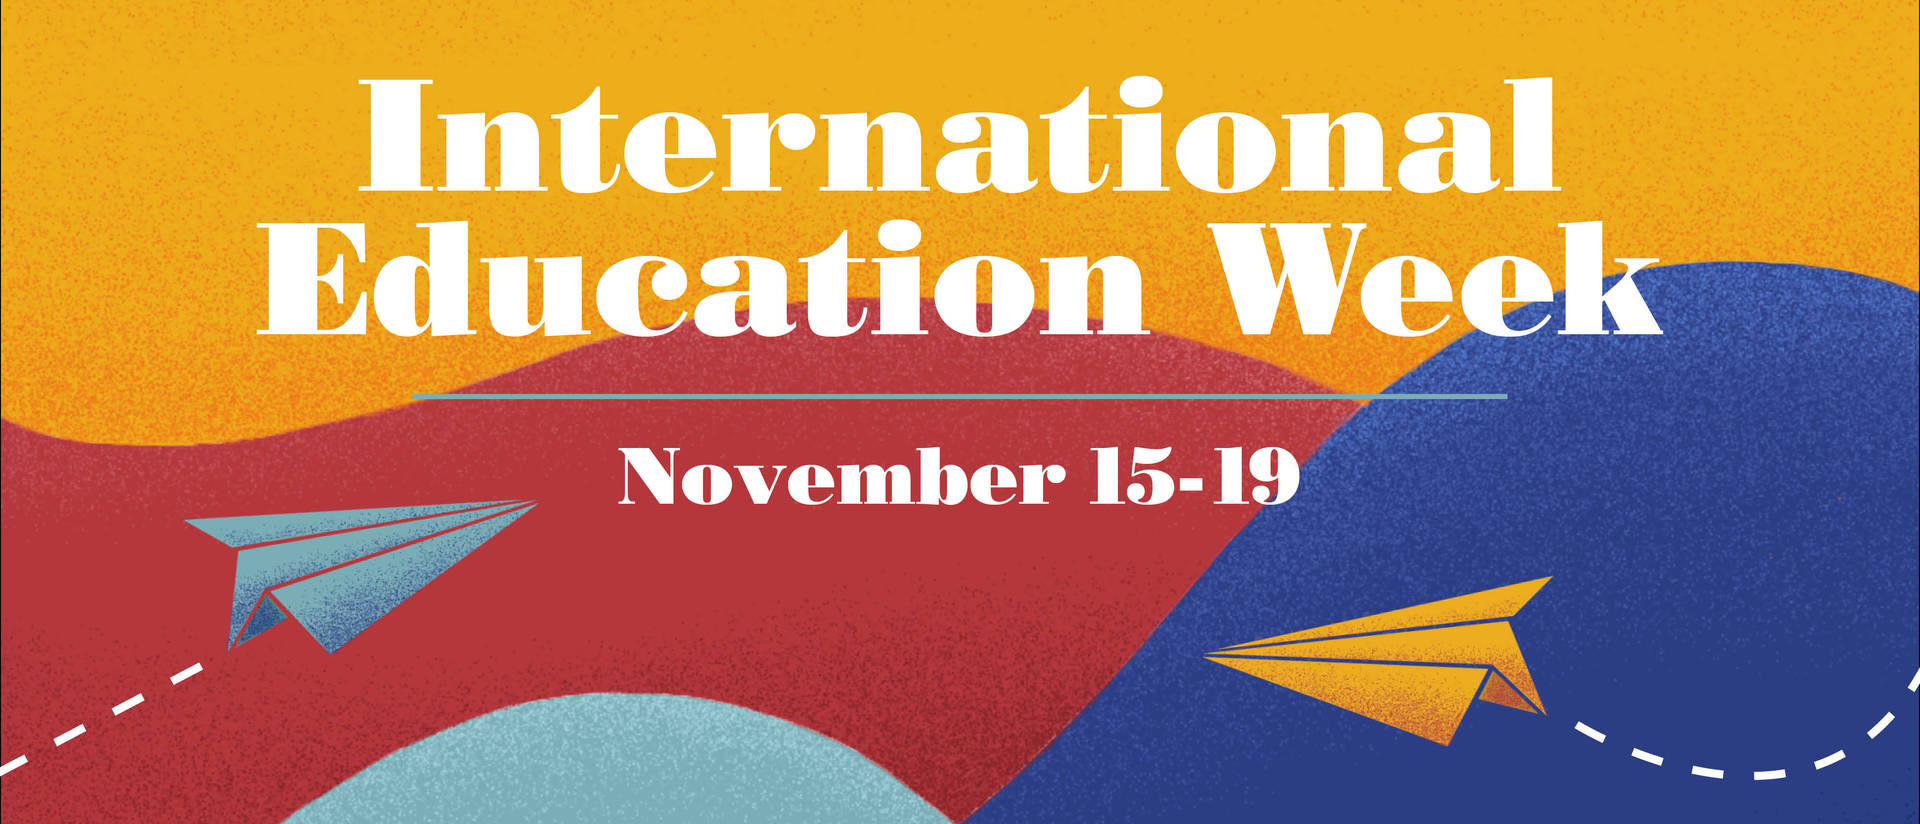 International Education Week, Nov. 15-19